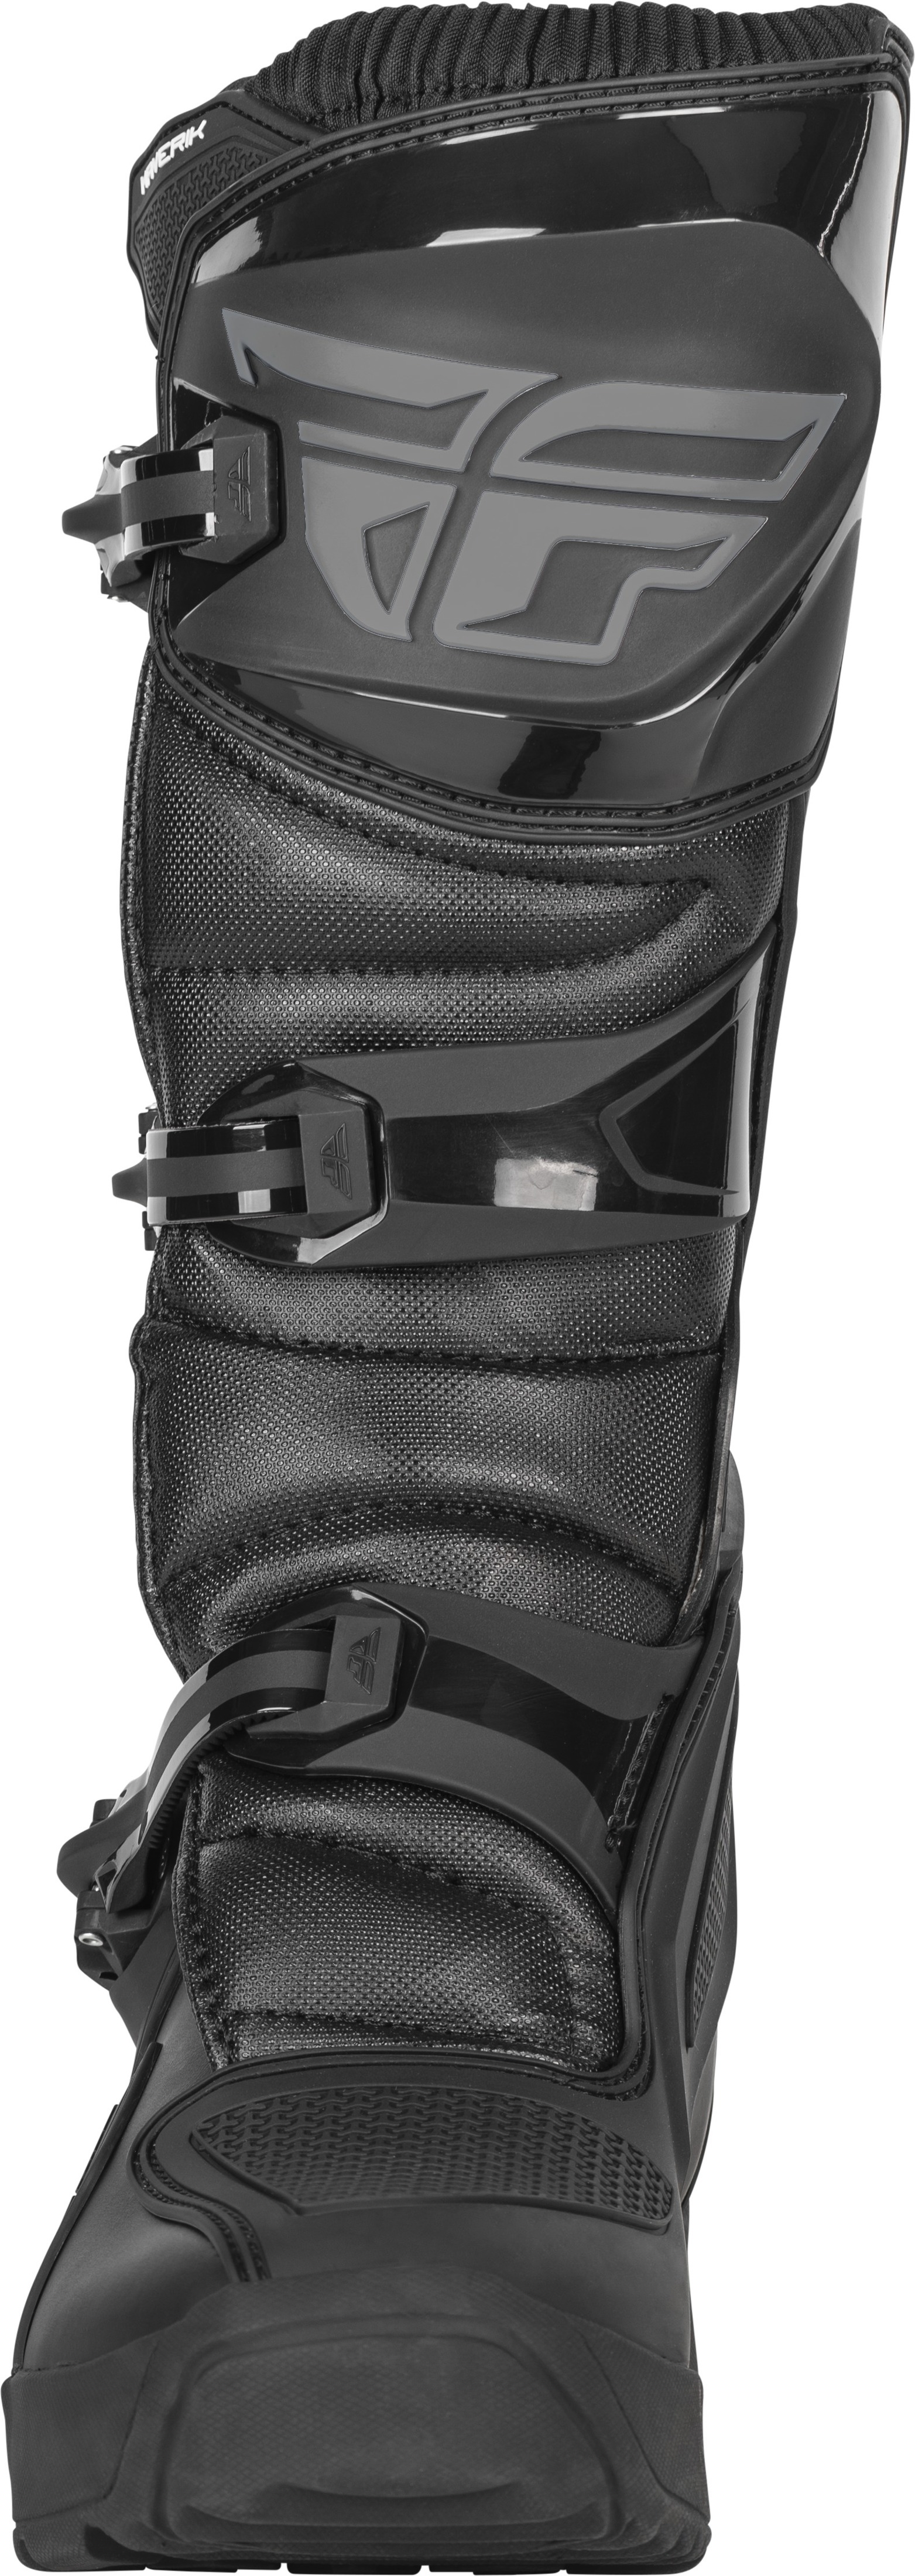 Maverik Enduro Boot Black Size 7 - Click Image to Close